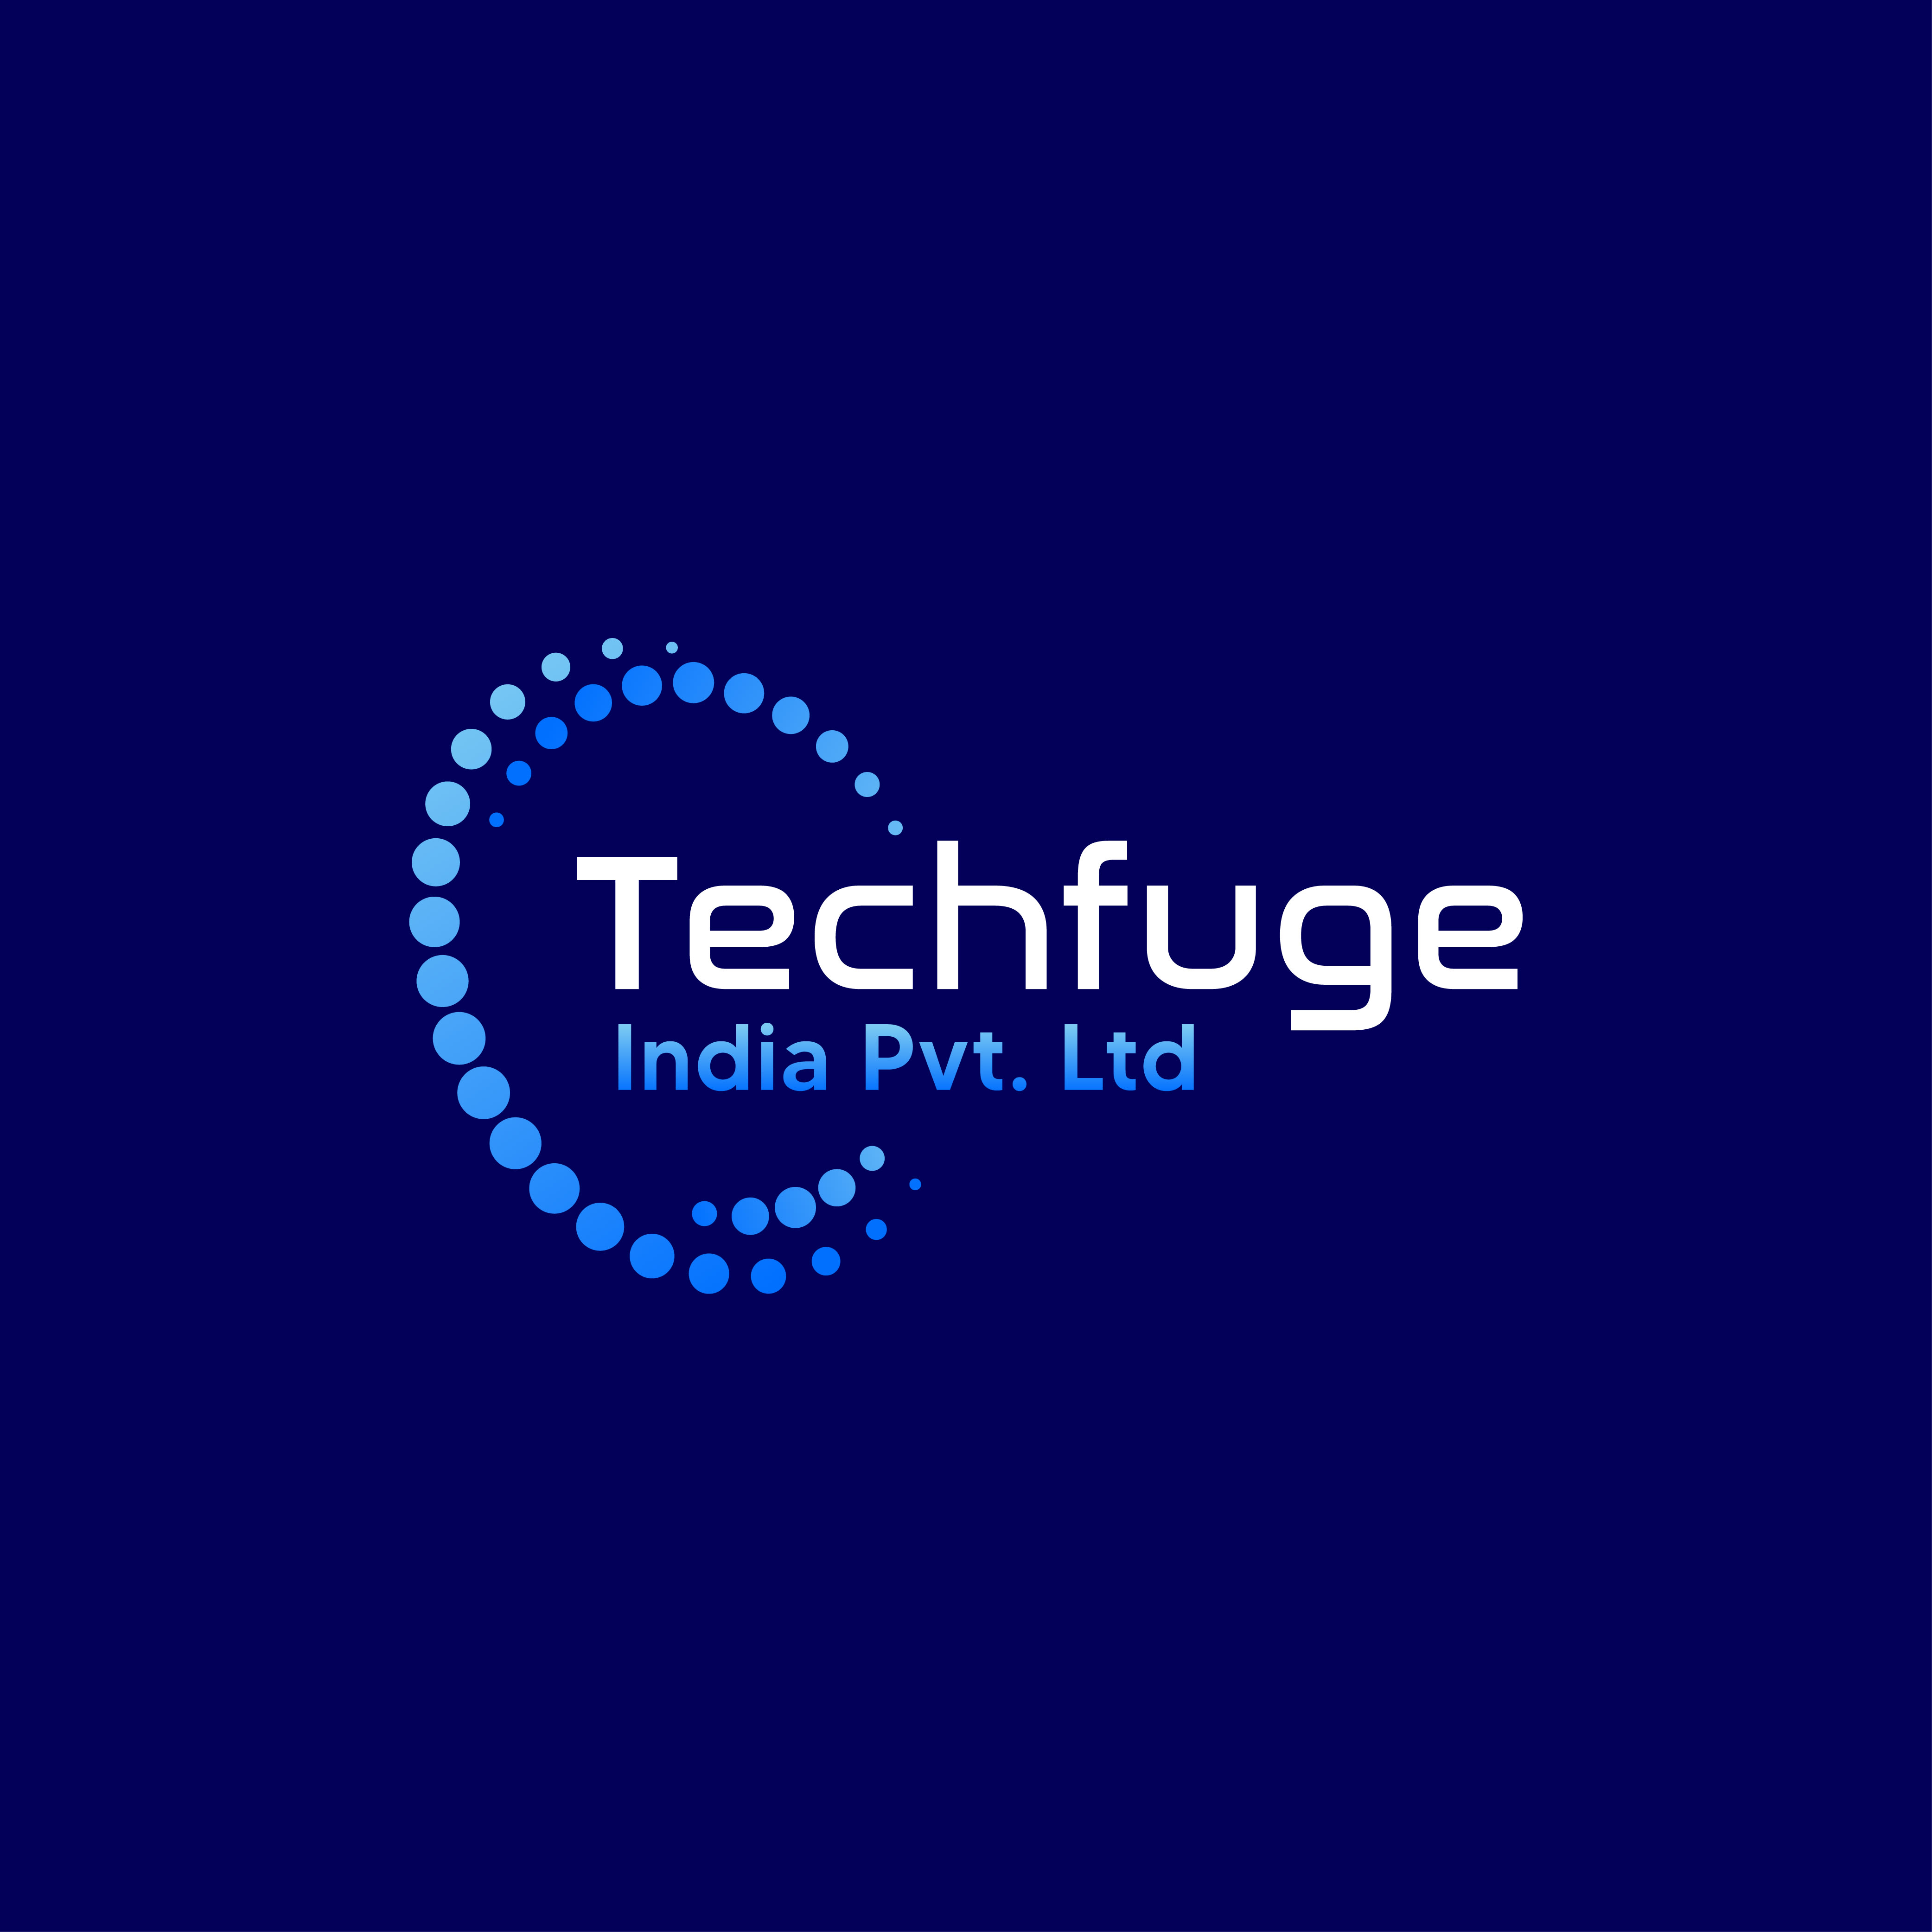 TechFuge India Pvt. Ltd. logo